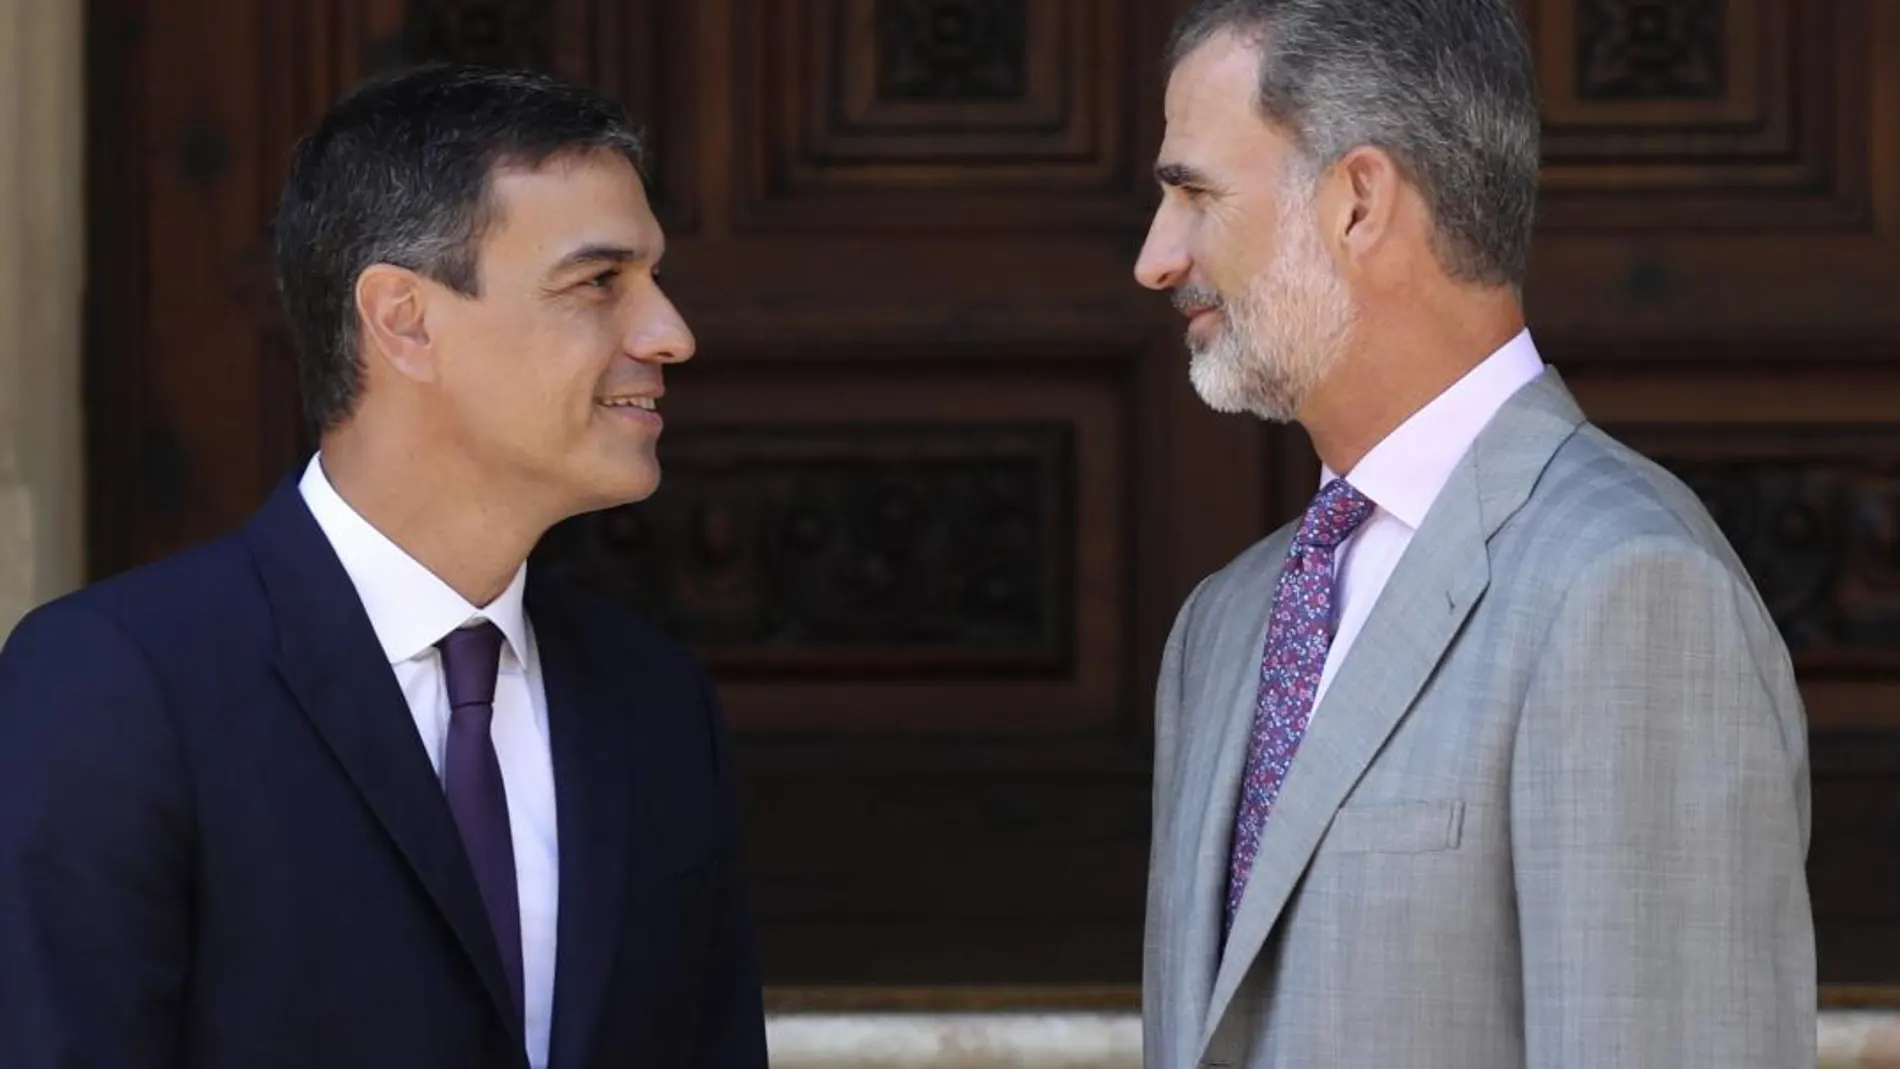 El Rey Felipe VI y el presidente del Gobierno, Pedro Sánchez, en el Palacio de Marivent / Foto: Efe